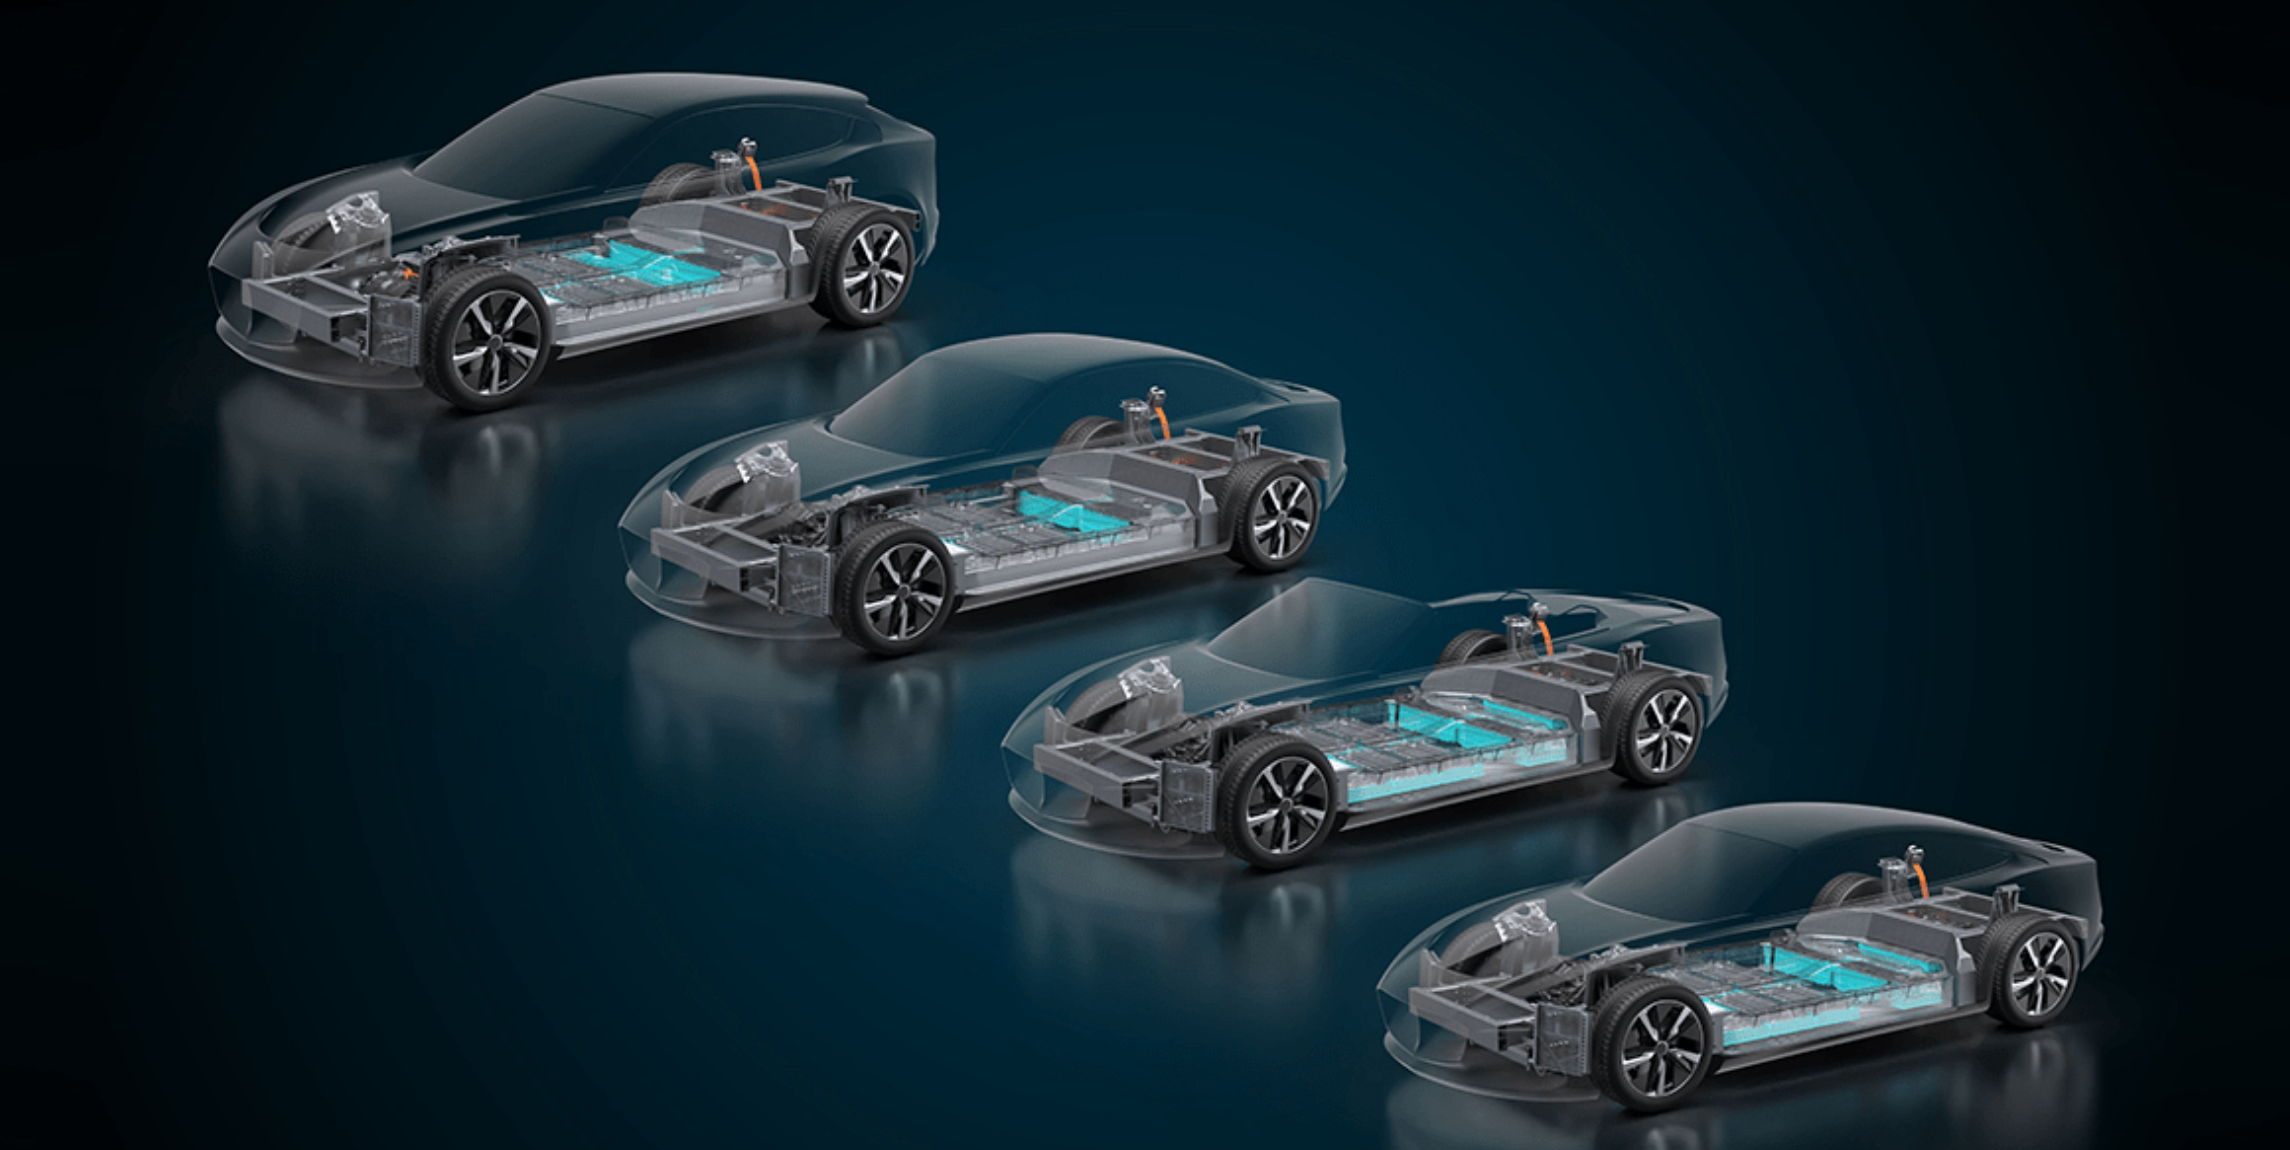 Williams & Italdesign develop their own EV platform